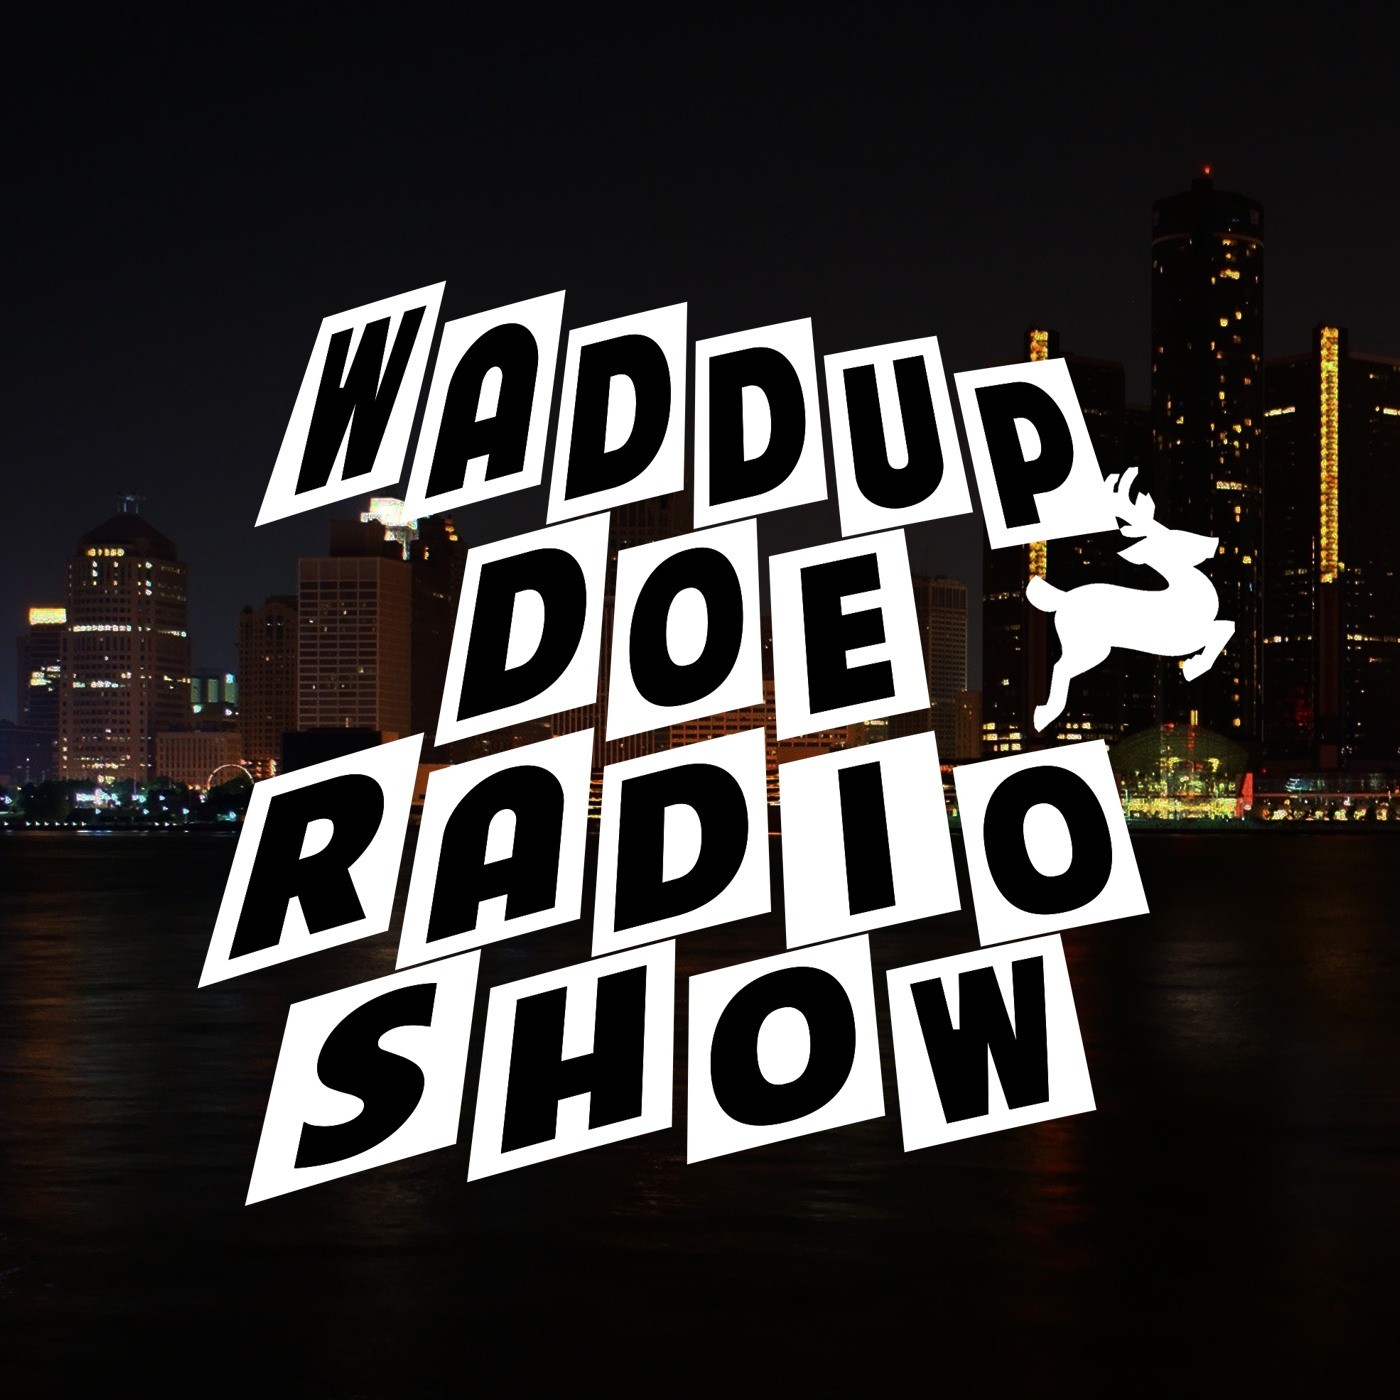 Waddup Doe Radio Show